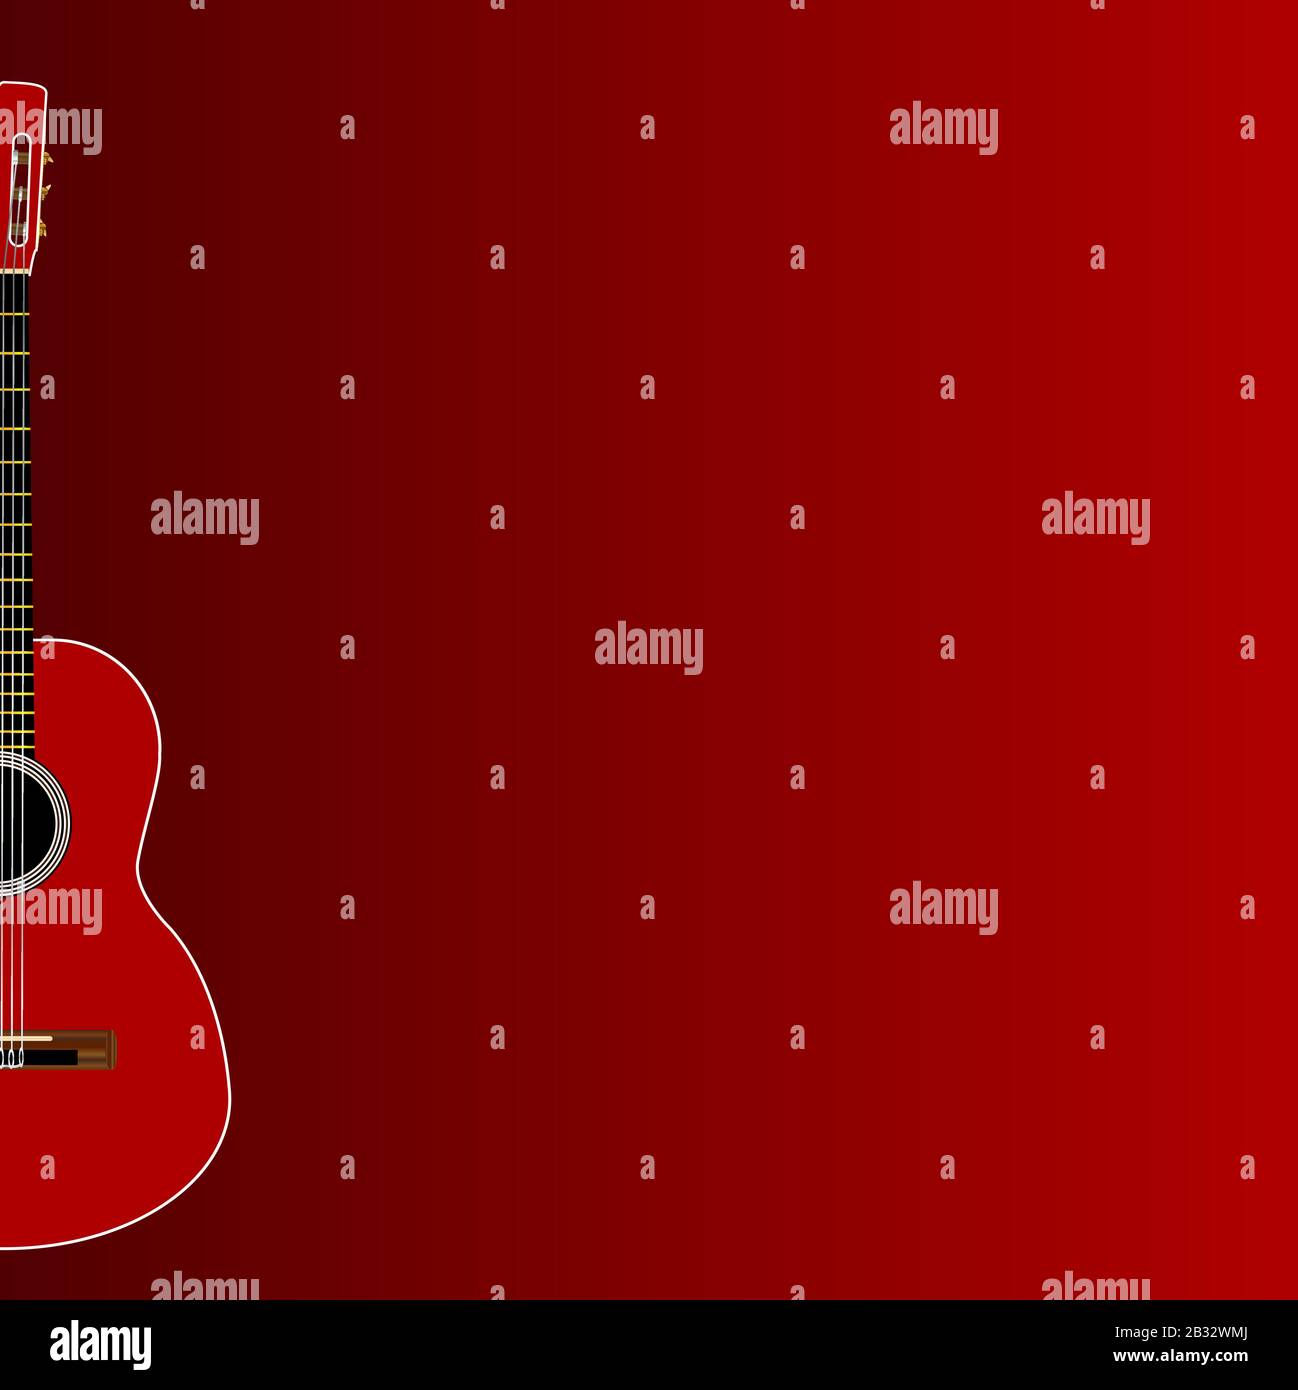 Une guitare acoustique typique flamenco espagnole installée sur un fond rouge foncé Illustration de Vecteur